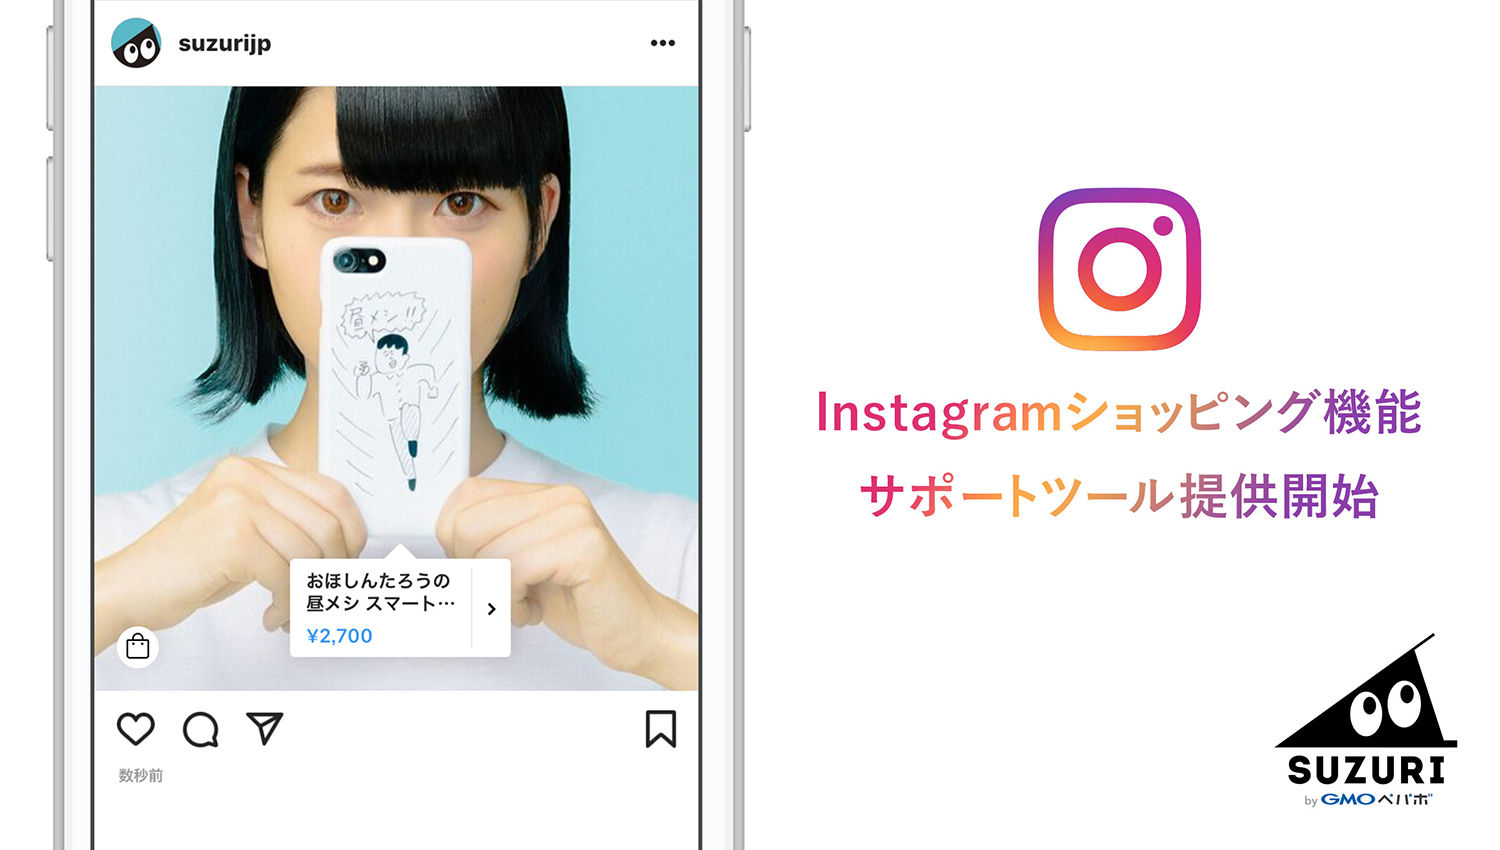 オリジナルグッズ作成・販売サービス「SUZURI（スズリ）」『Instagram ショッピング機能』に対応　〜導入サポートツールを公開、クーポンプレゼントキャンペーンも実施〜